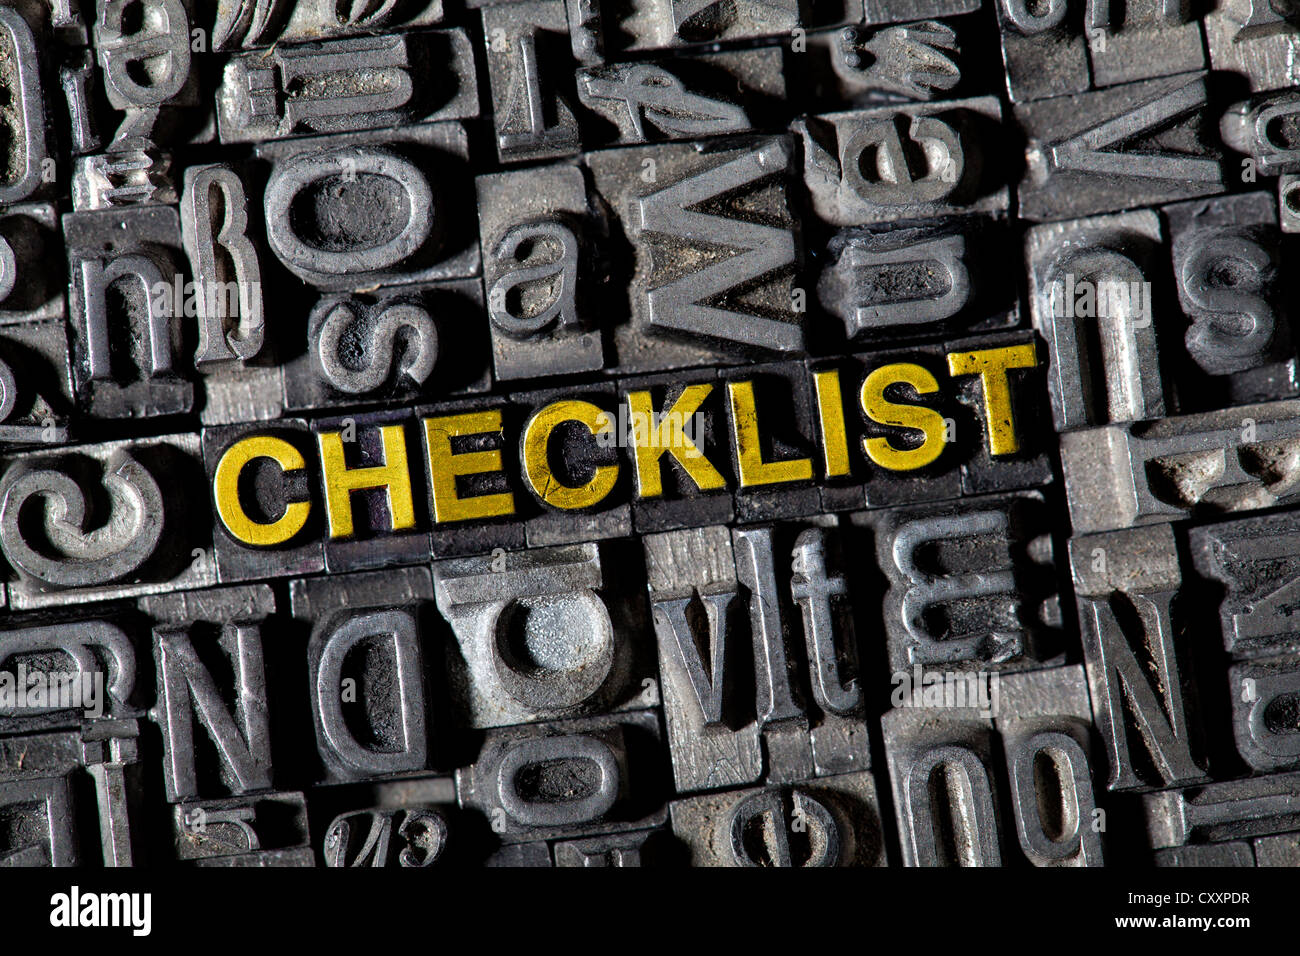 Antiguas letras de plomo que forman la palabra "checklist" Foto de stock